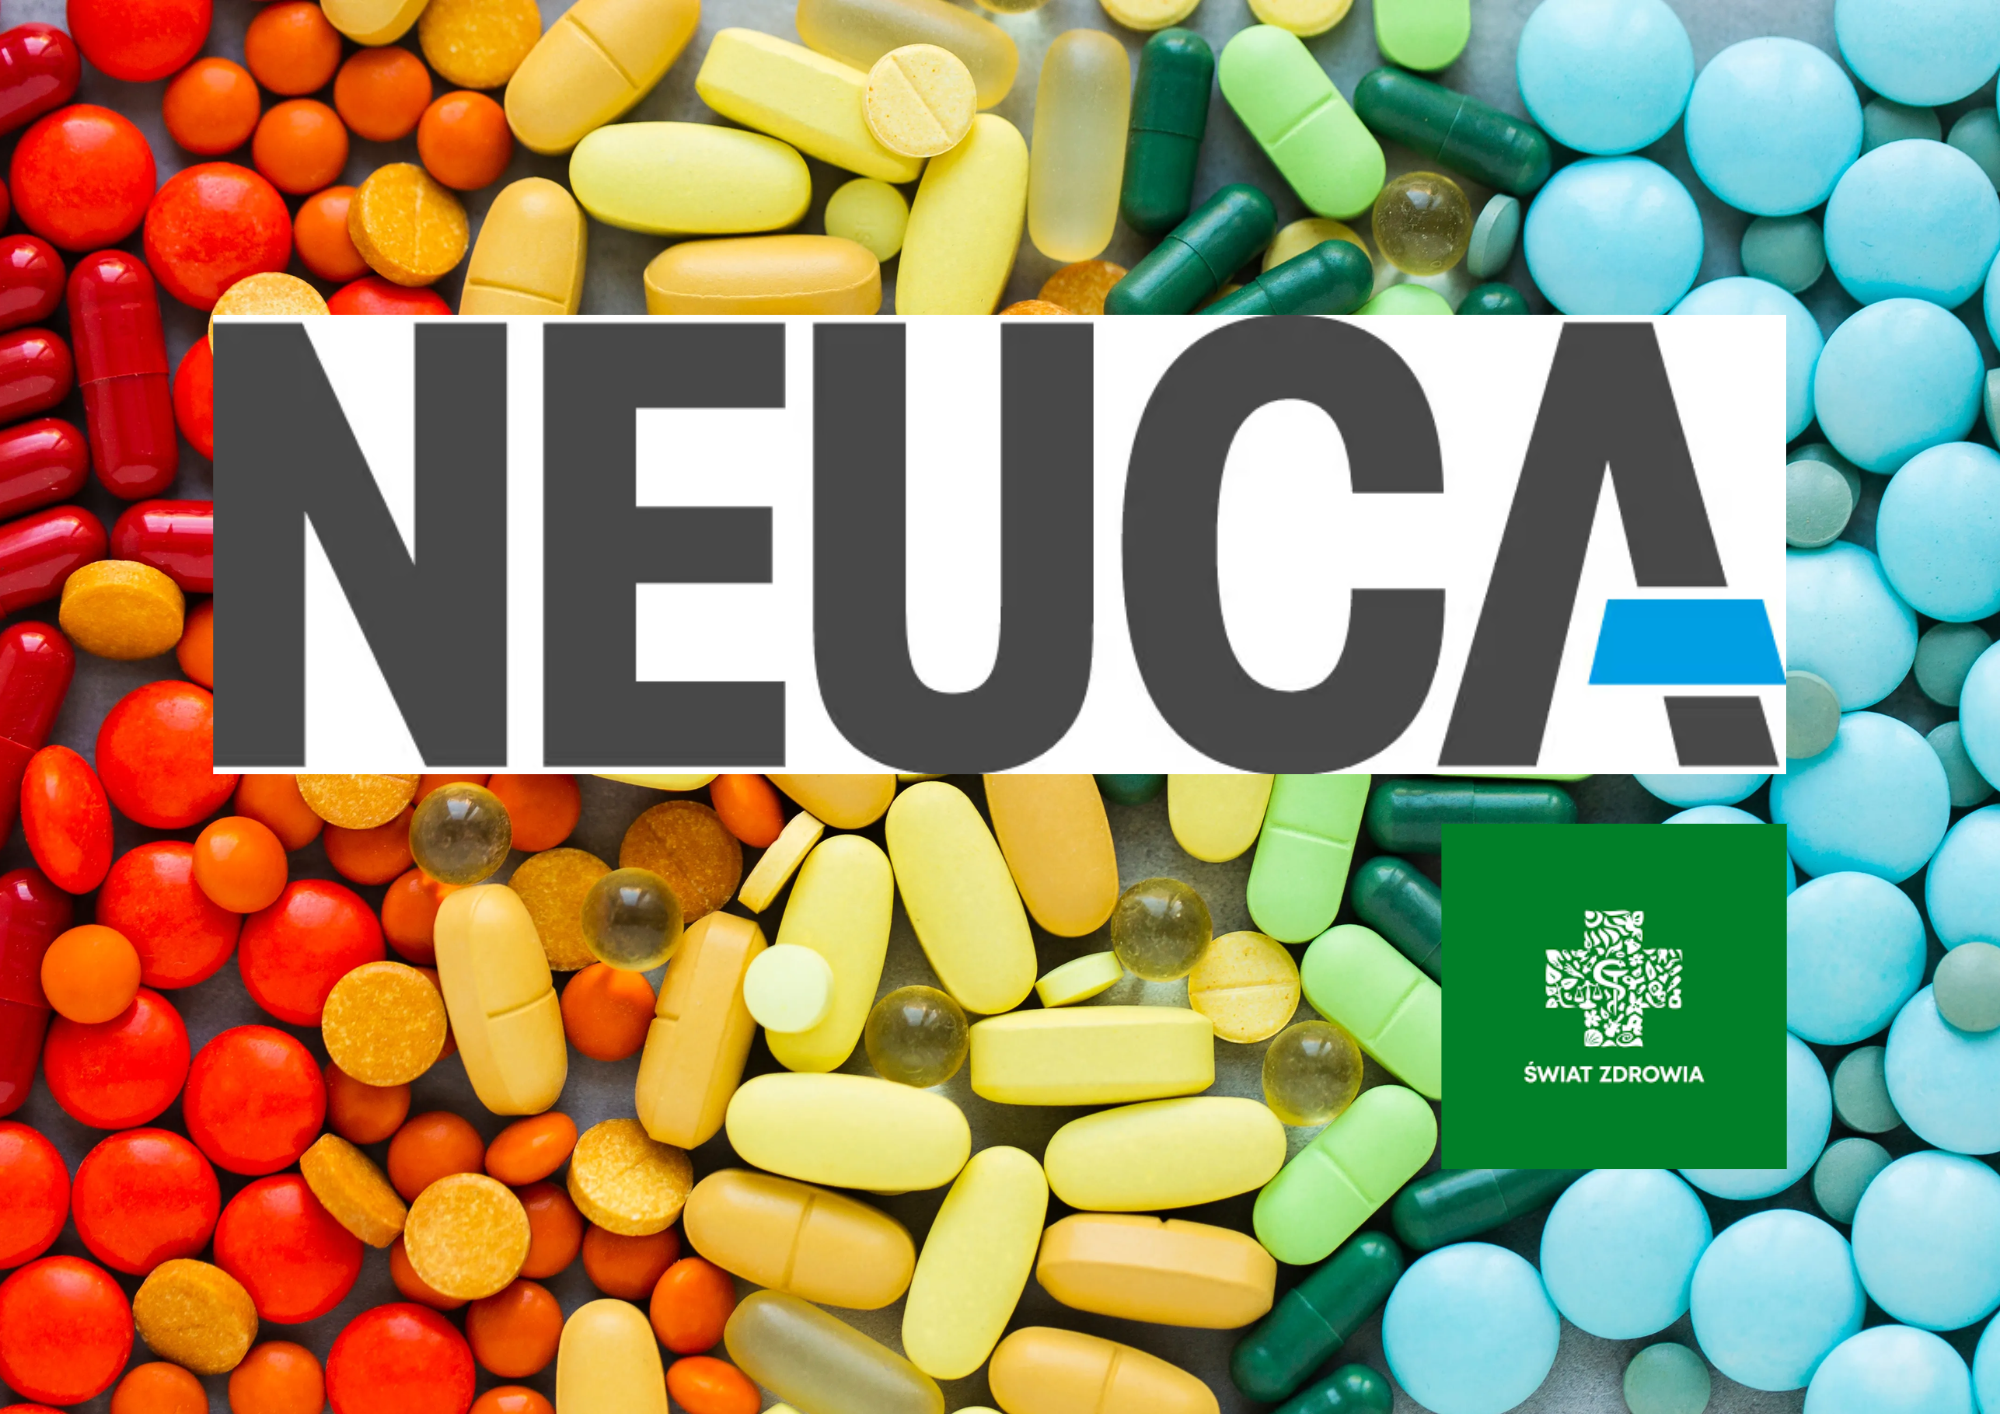 Dywidendowy arystokrata wytycza trendy na rynku farmacji — Analiza Neuca